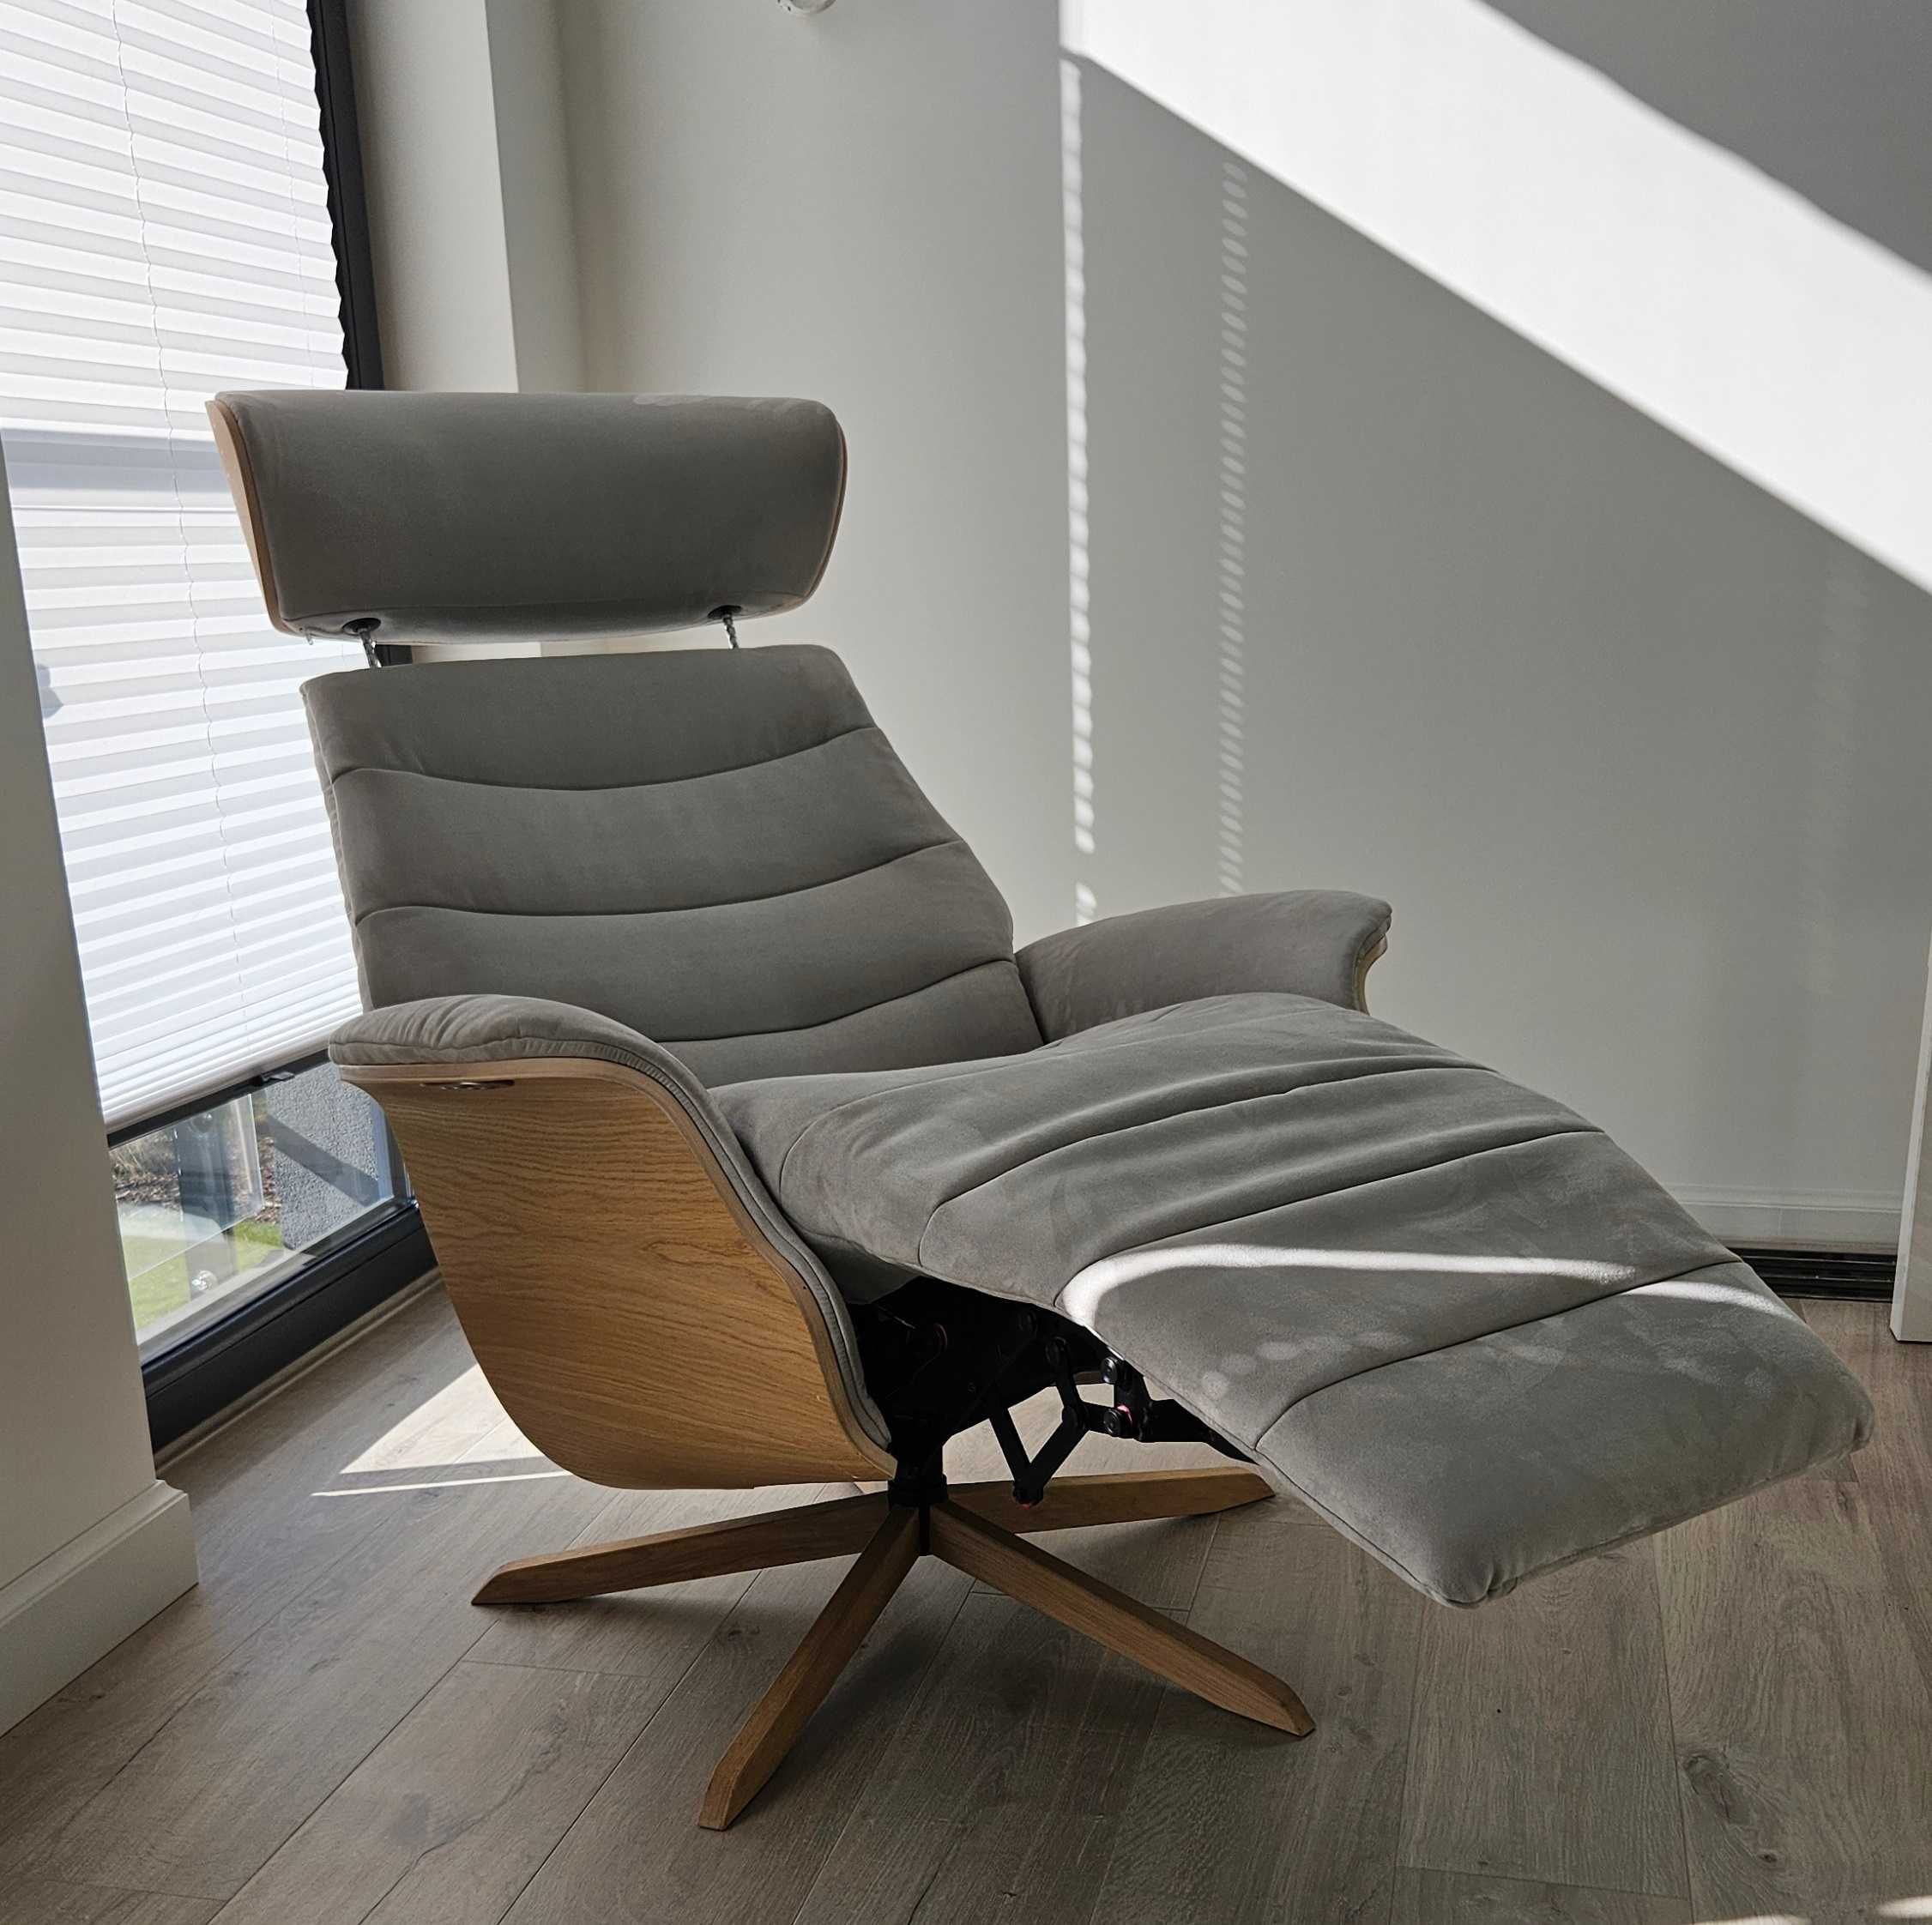 Flexlux fotel wypoczynkowy komfort, rozkładany Top Model Alcantara